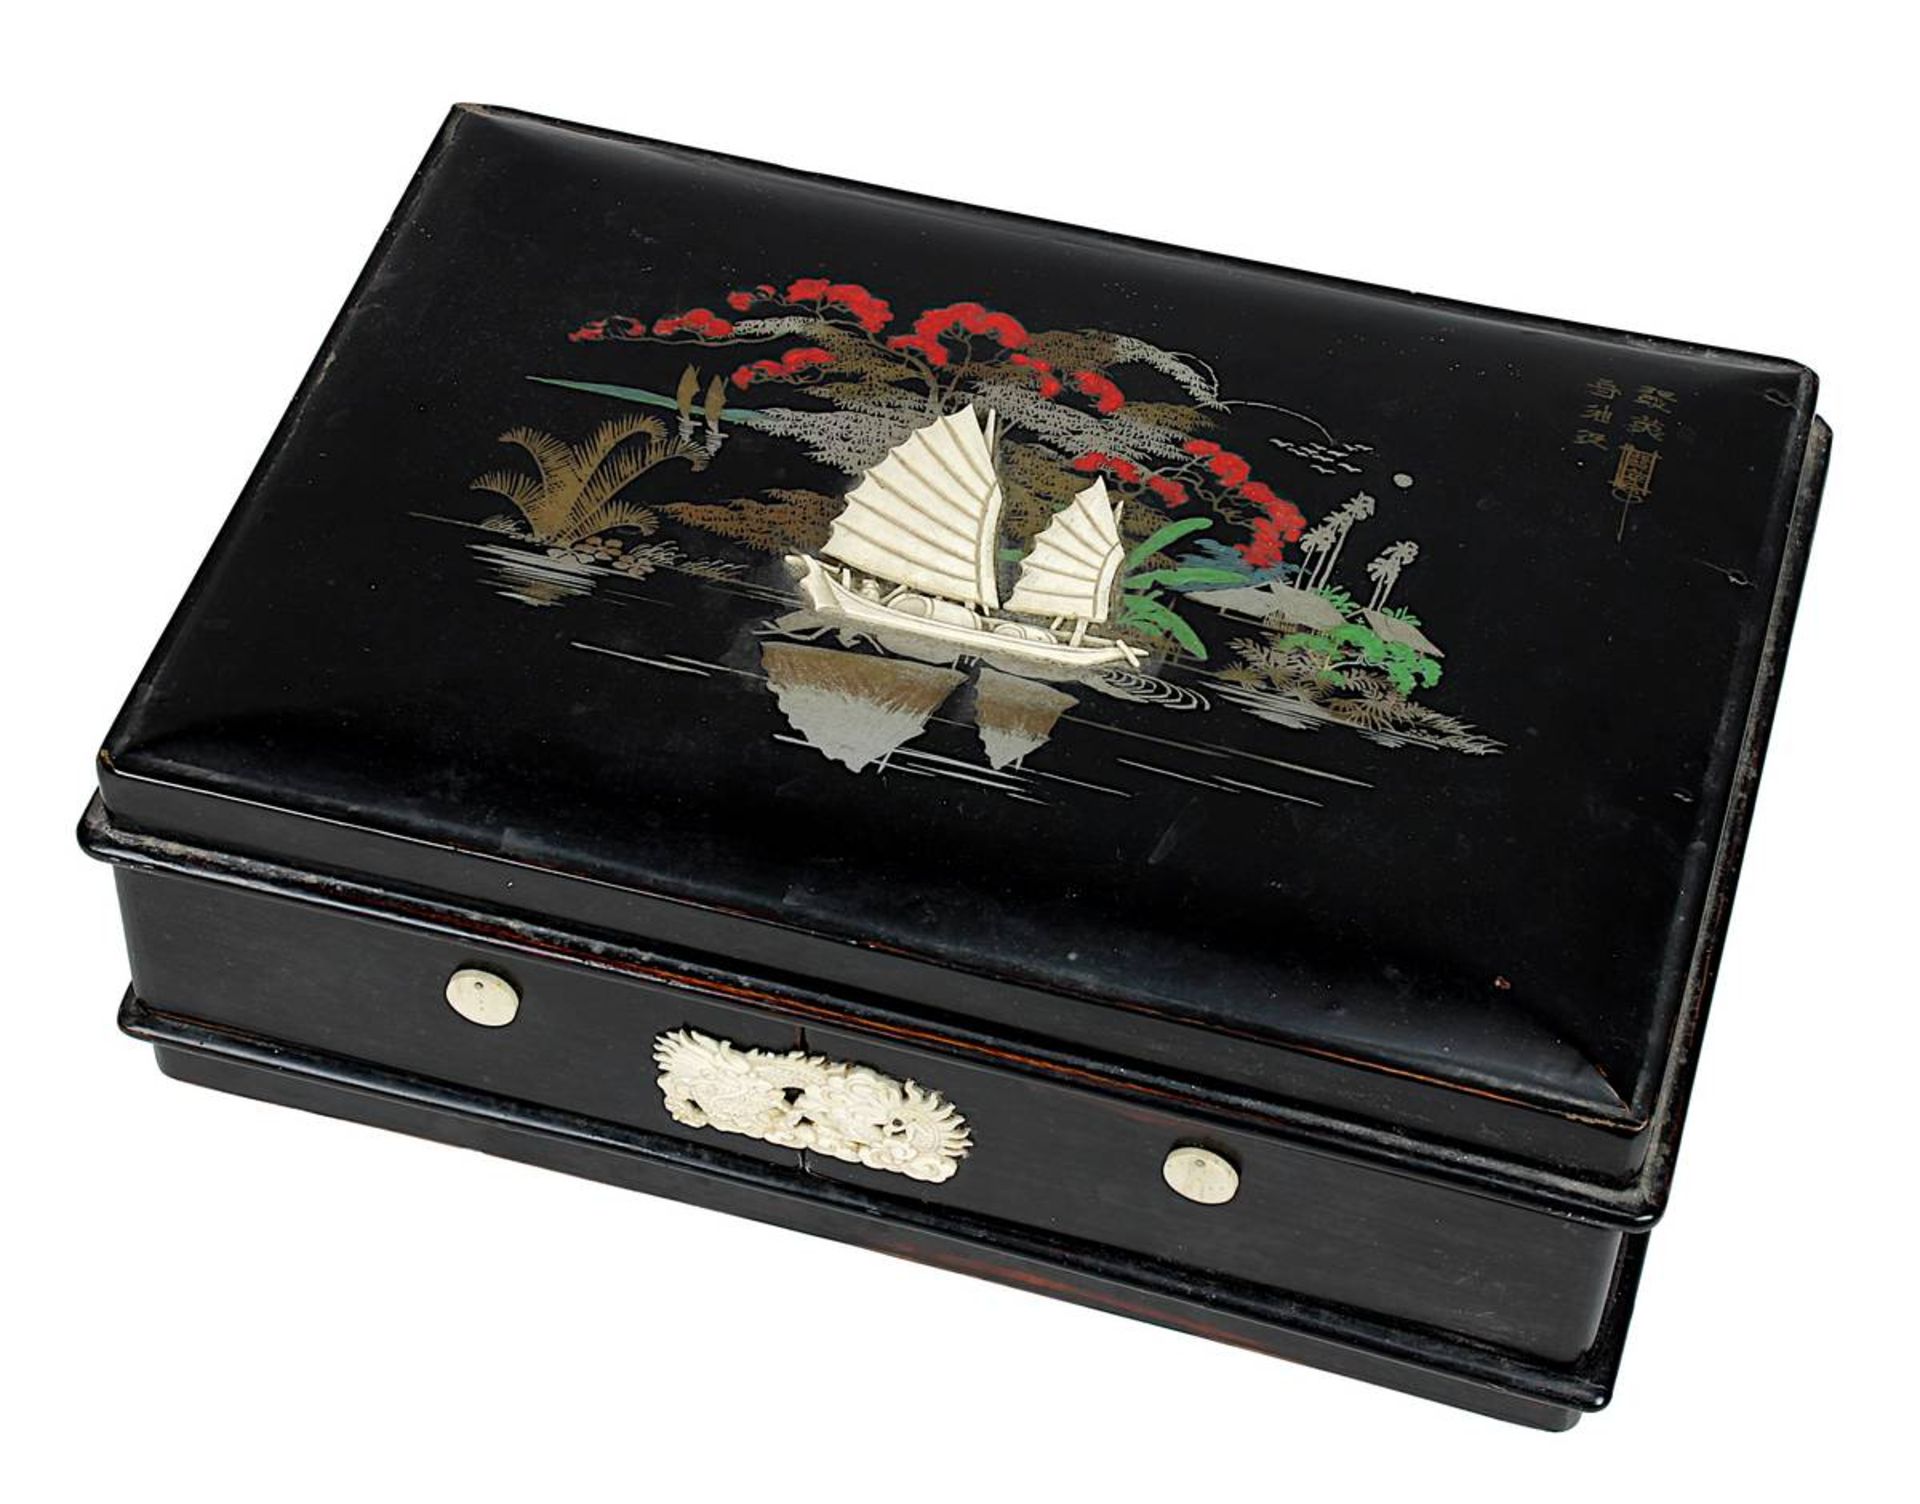 Lack-Schminkschatulle, China um 1900, schwarz lackiertes Holz, anscharnierter Deckel, mit gemaltem